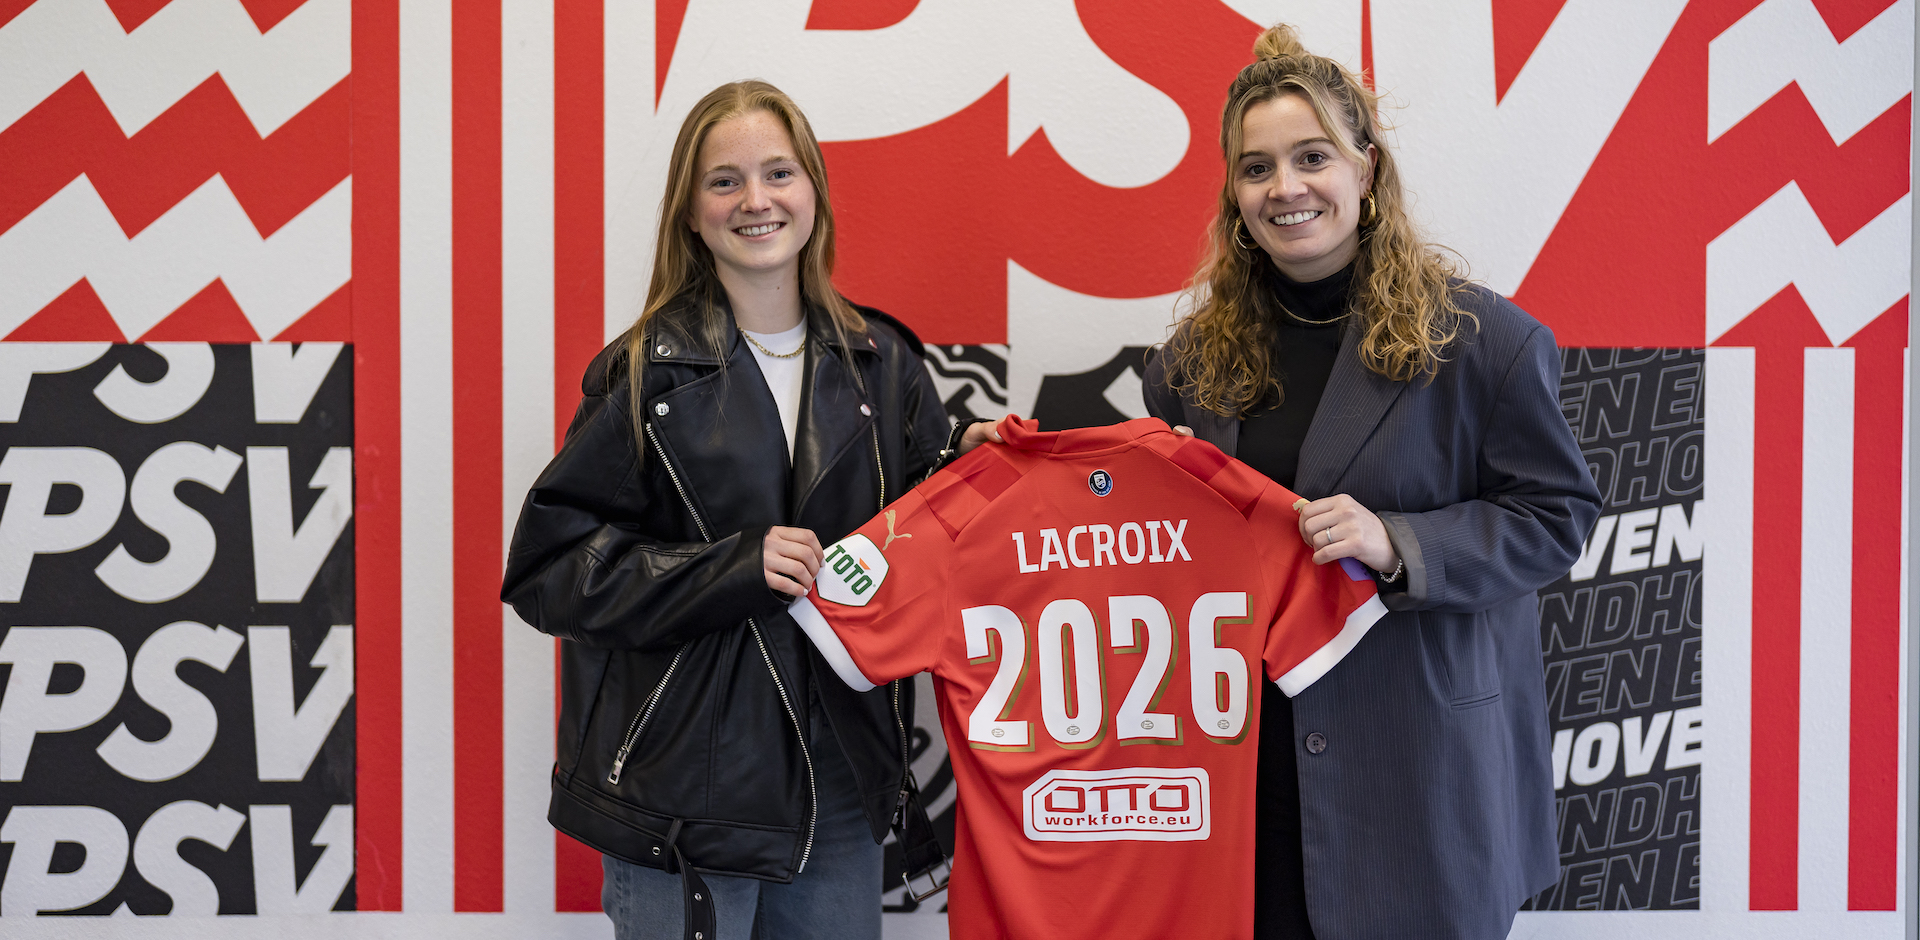 PSV - Contractnieuws | Robine Lacroix tekent tot medio 2026 bij PSV